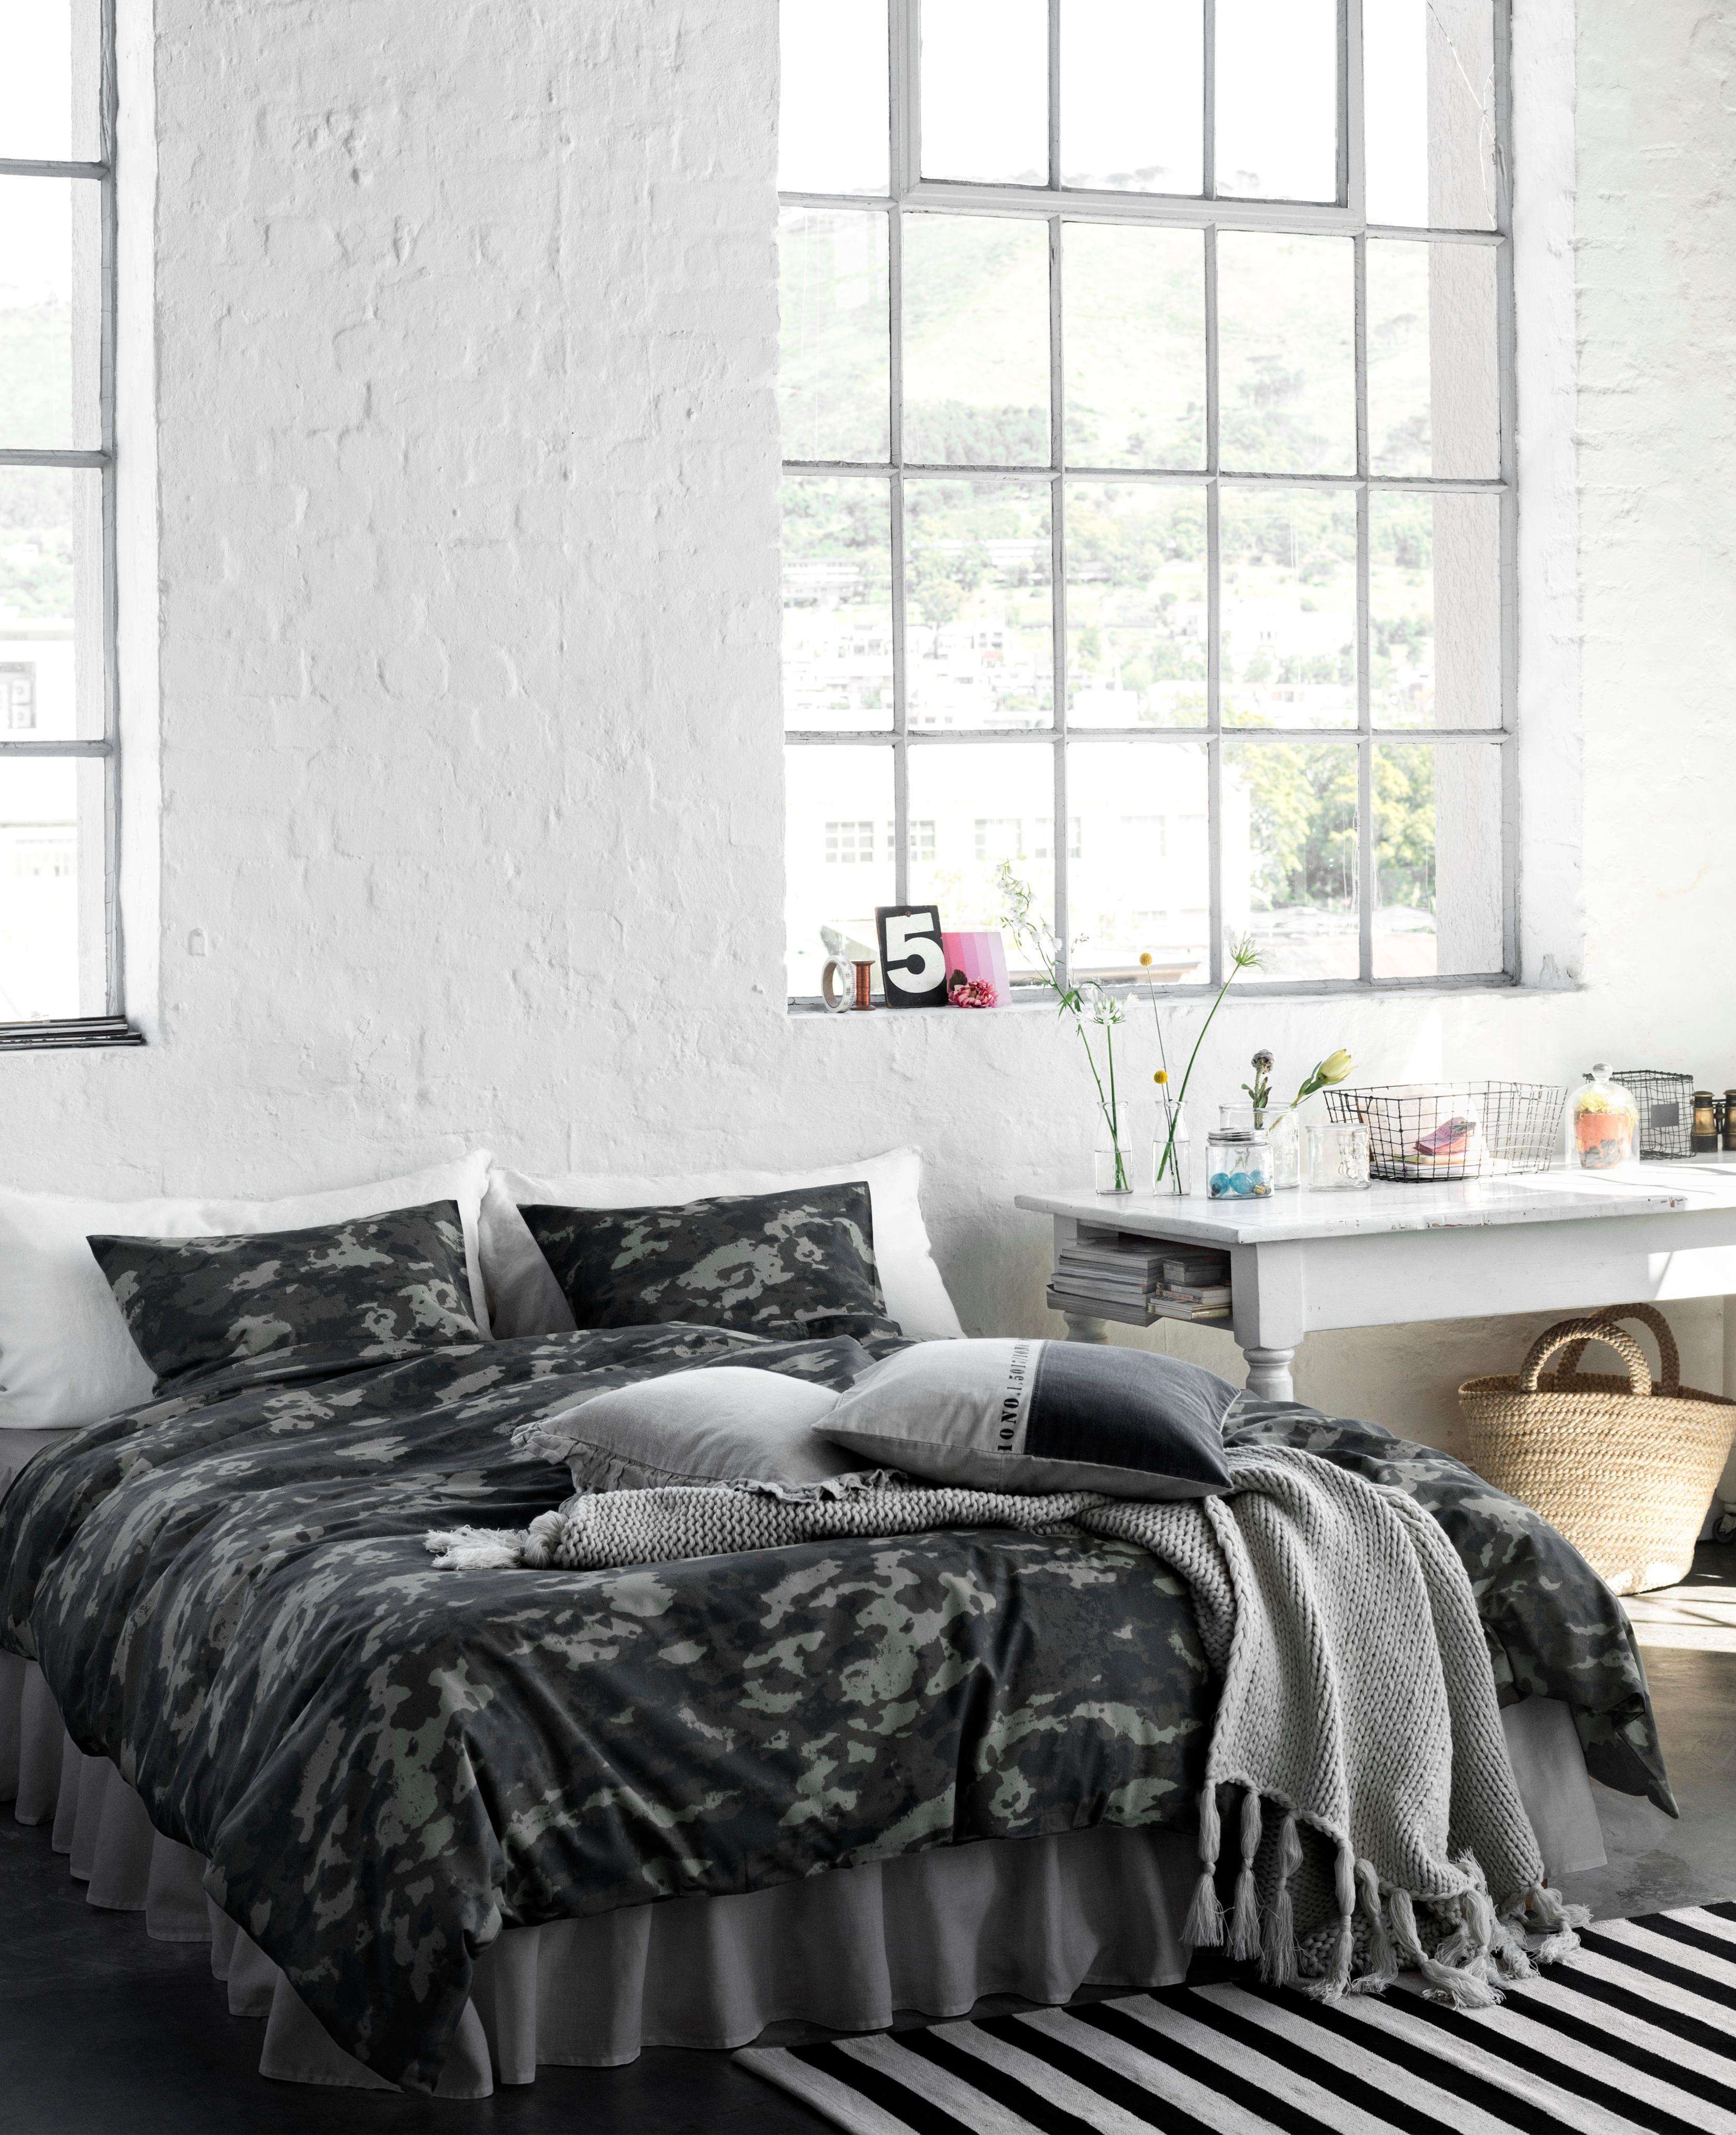 Ein Bett verschönern mit einer Betthusse #bett #teppich #gestreifterteppich #schlafzimmergestalten ©H&M Home